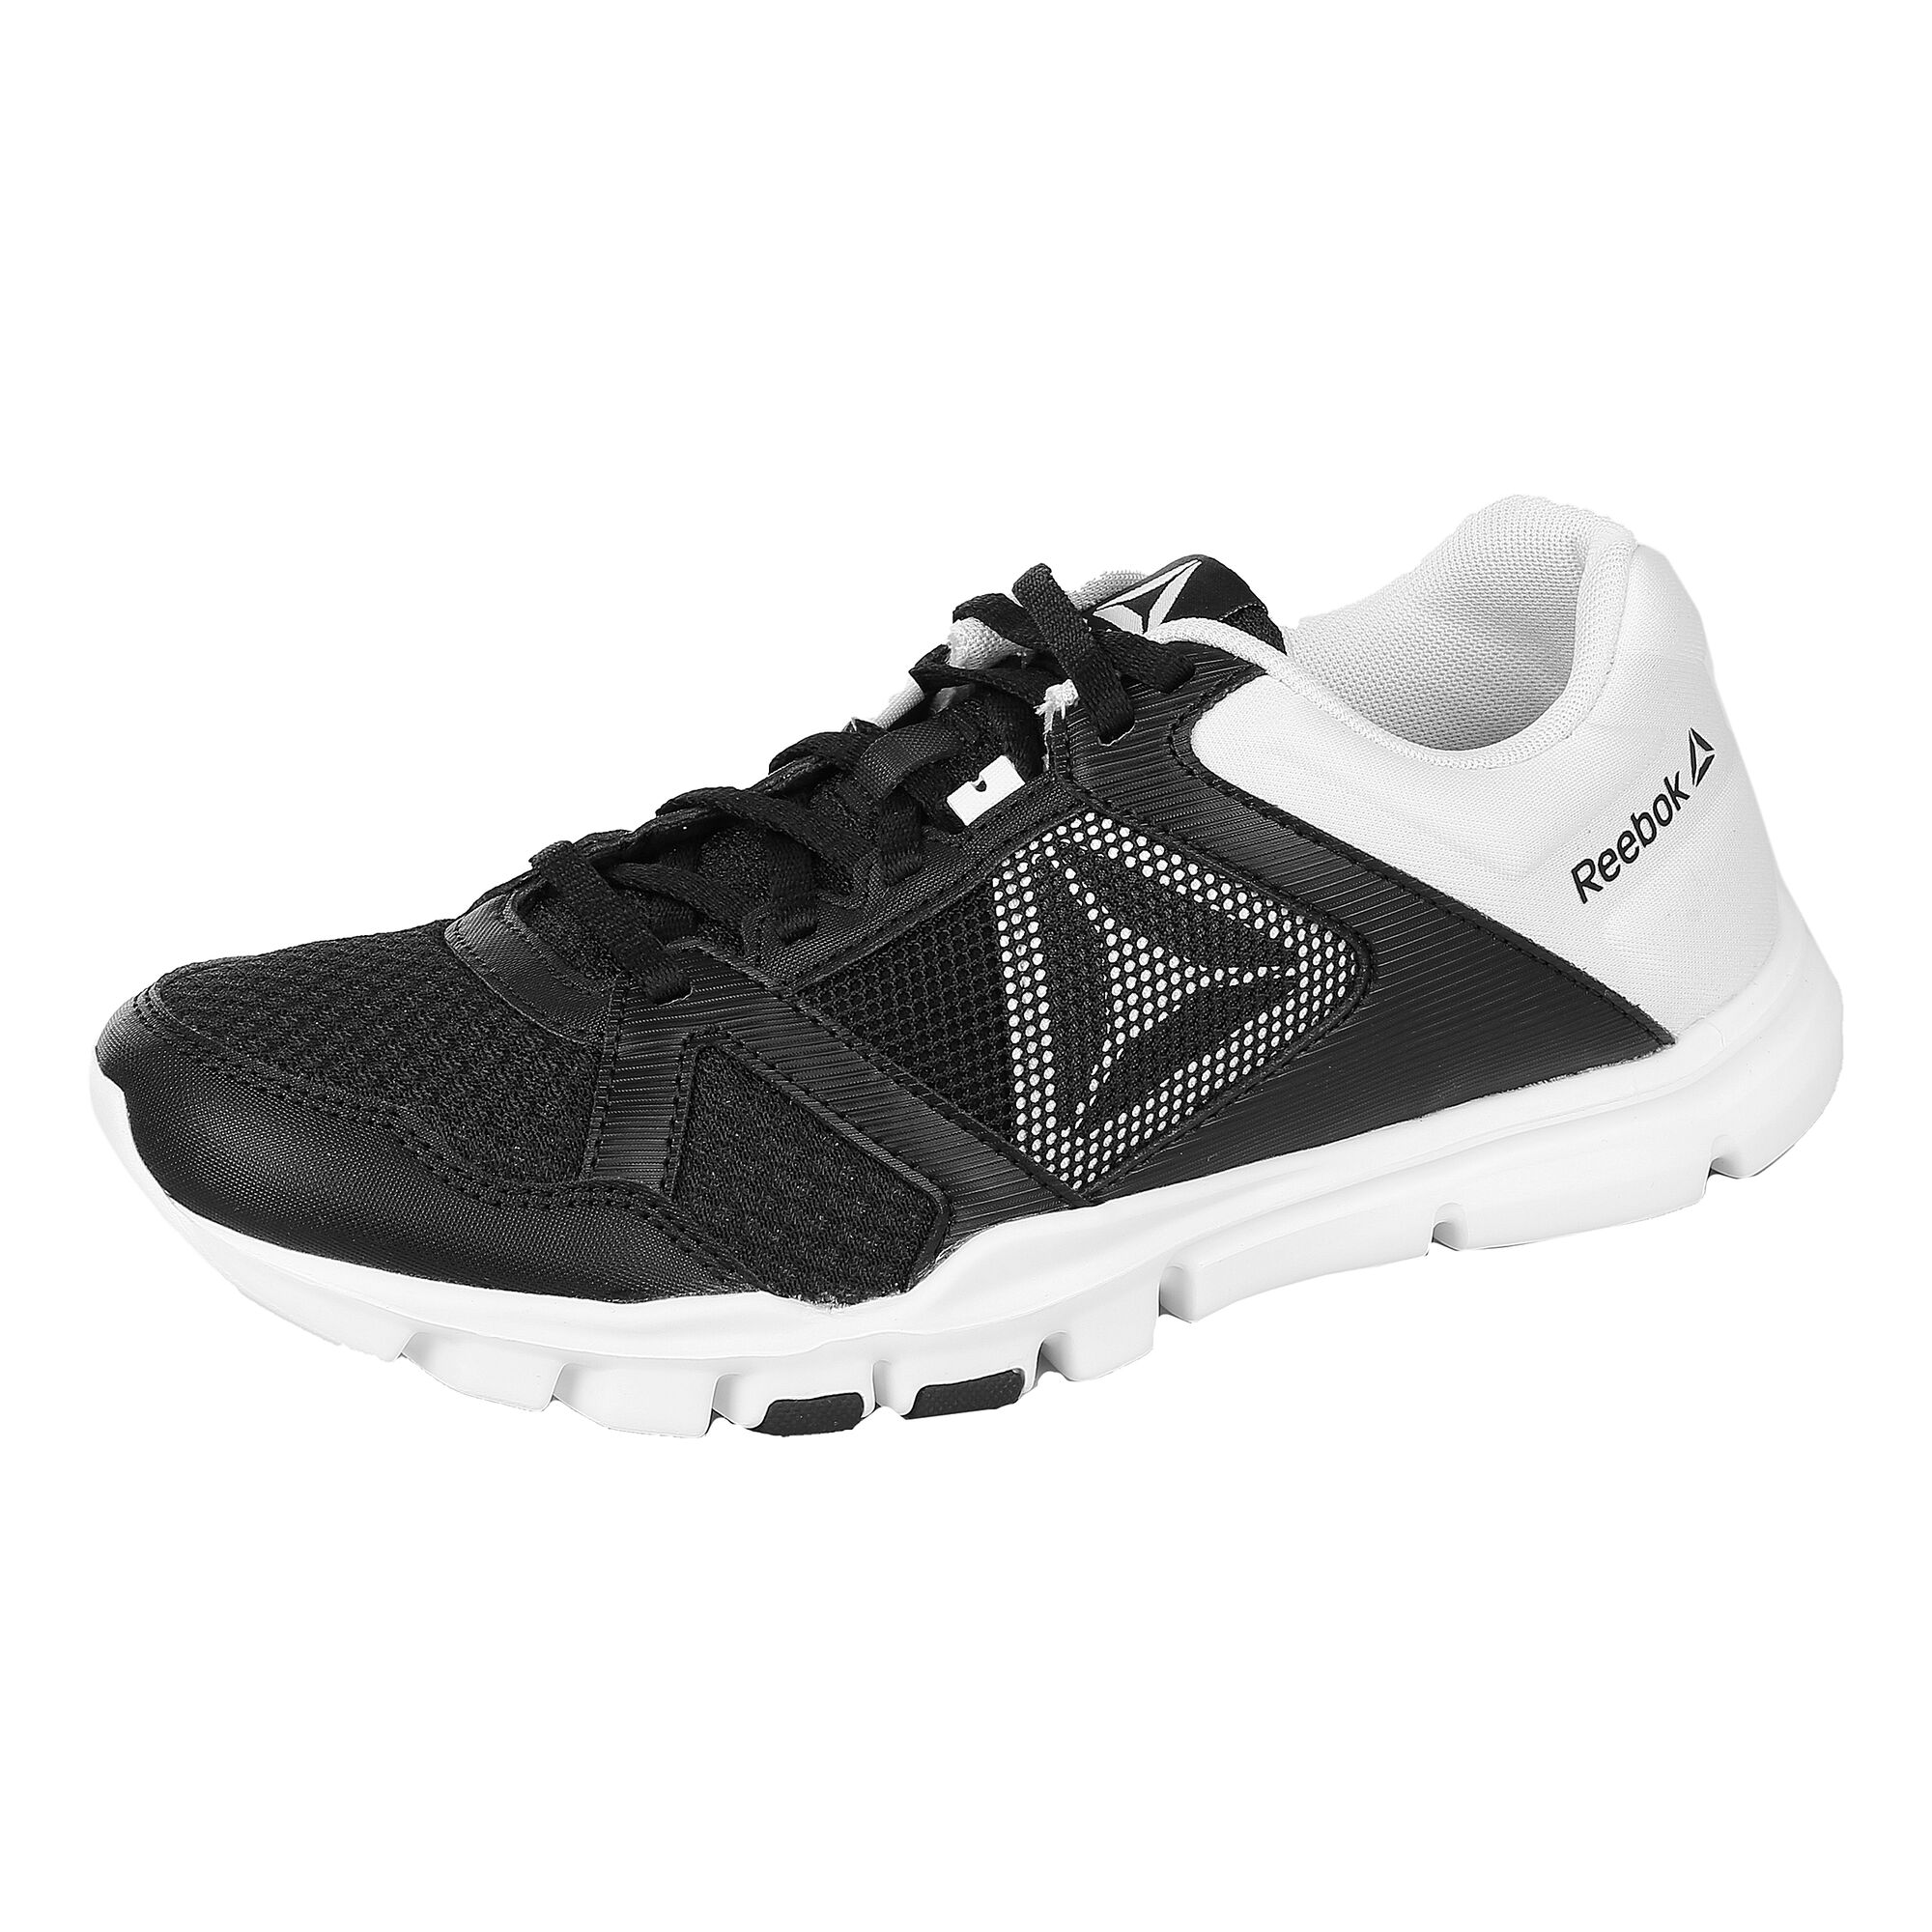 buy Reebok Yourflex Trainette 10 Fitness Shoe Women - Black, White online | Tennis-Point